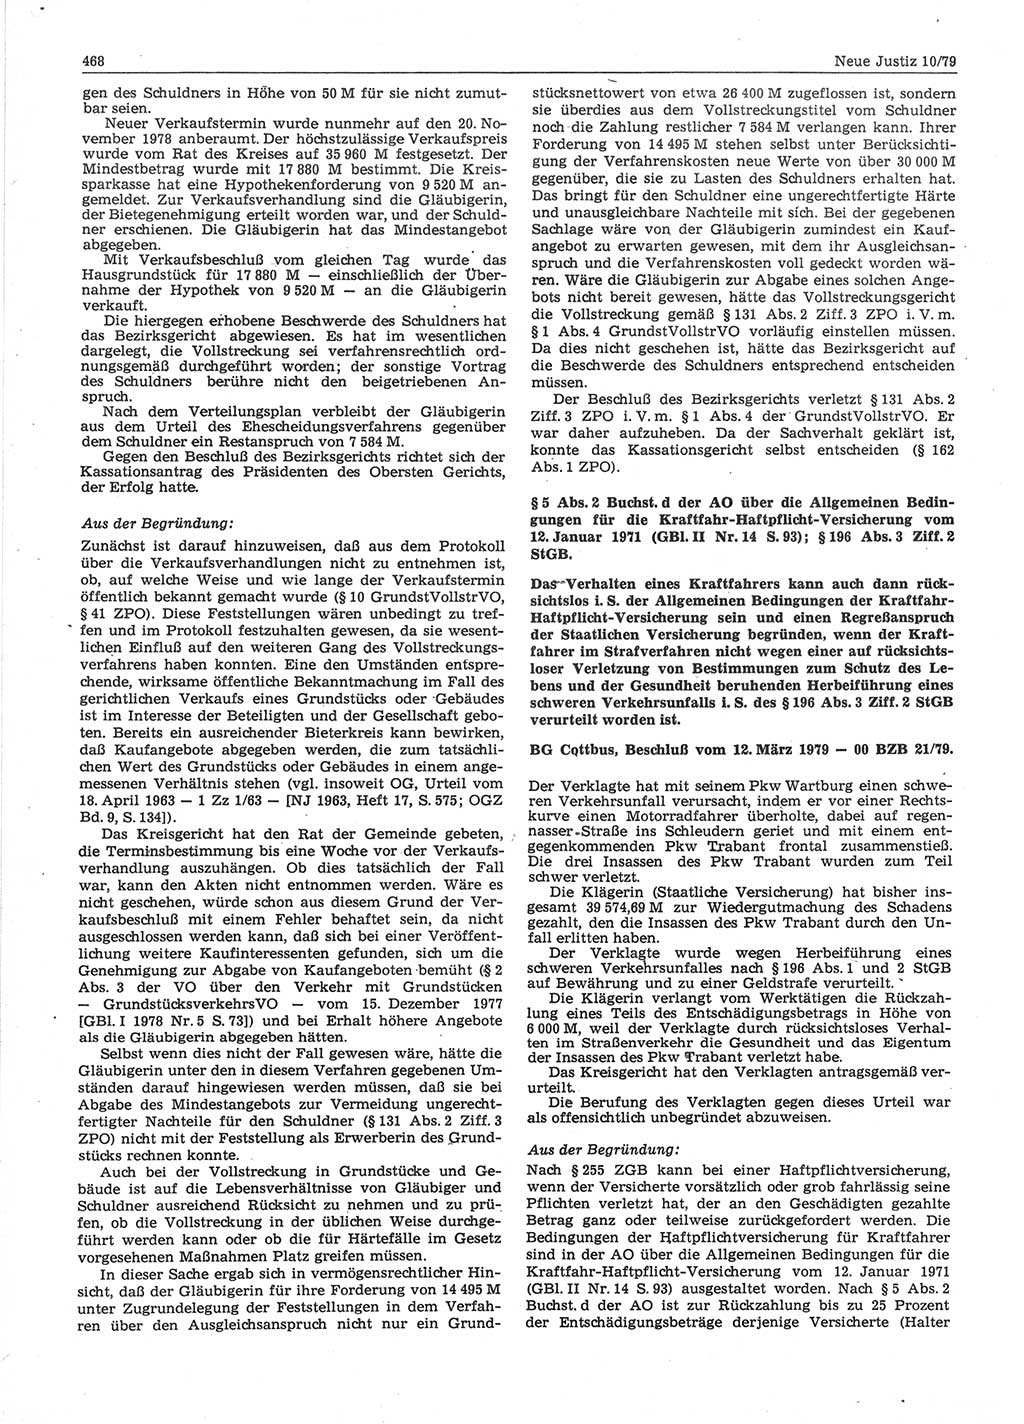 Neue Justiz (NJ), Zeitschrift für sozialistisches Recht und Gesetzlichkeit [Deutsche Demokratische Republik (DDR)], 33. Jahrgang 1979, Seite 468 (NJ DDR 1979, S. 468)